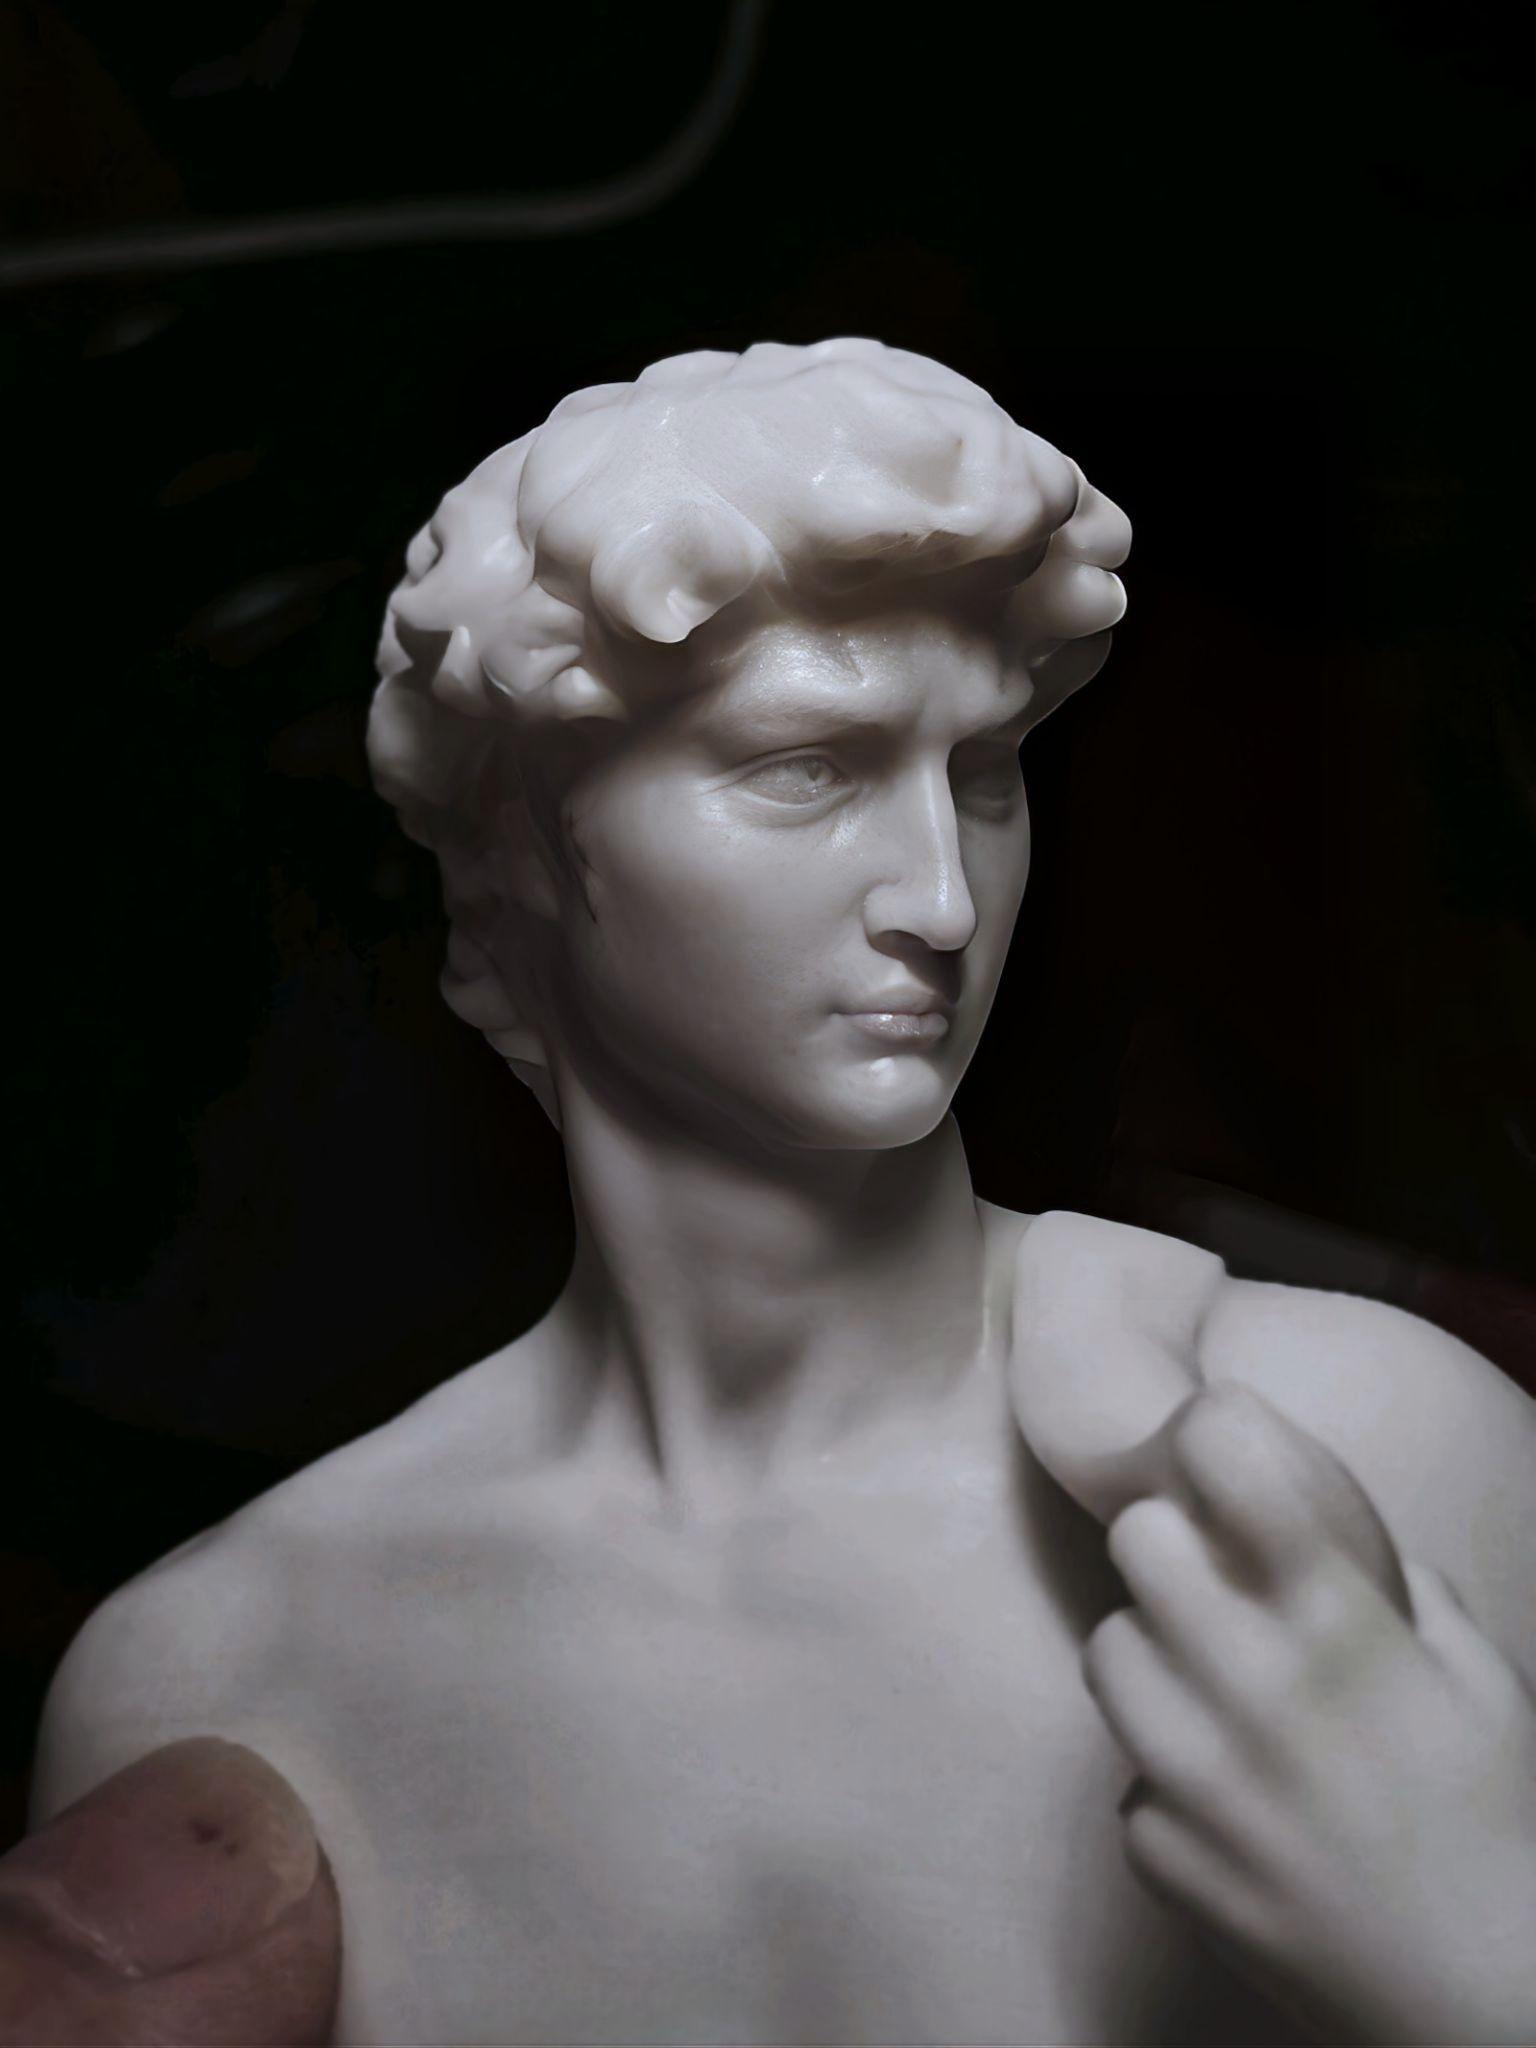 雕塑大卫像是谁的作品图片